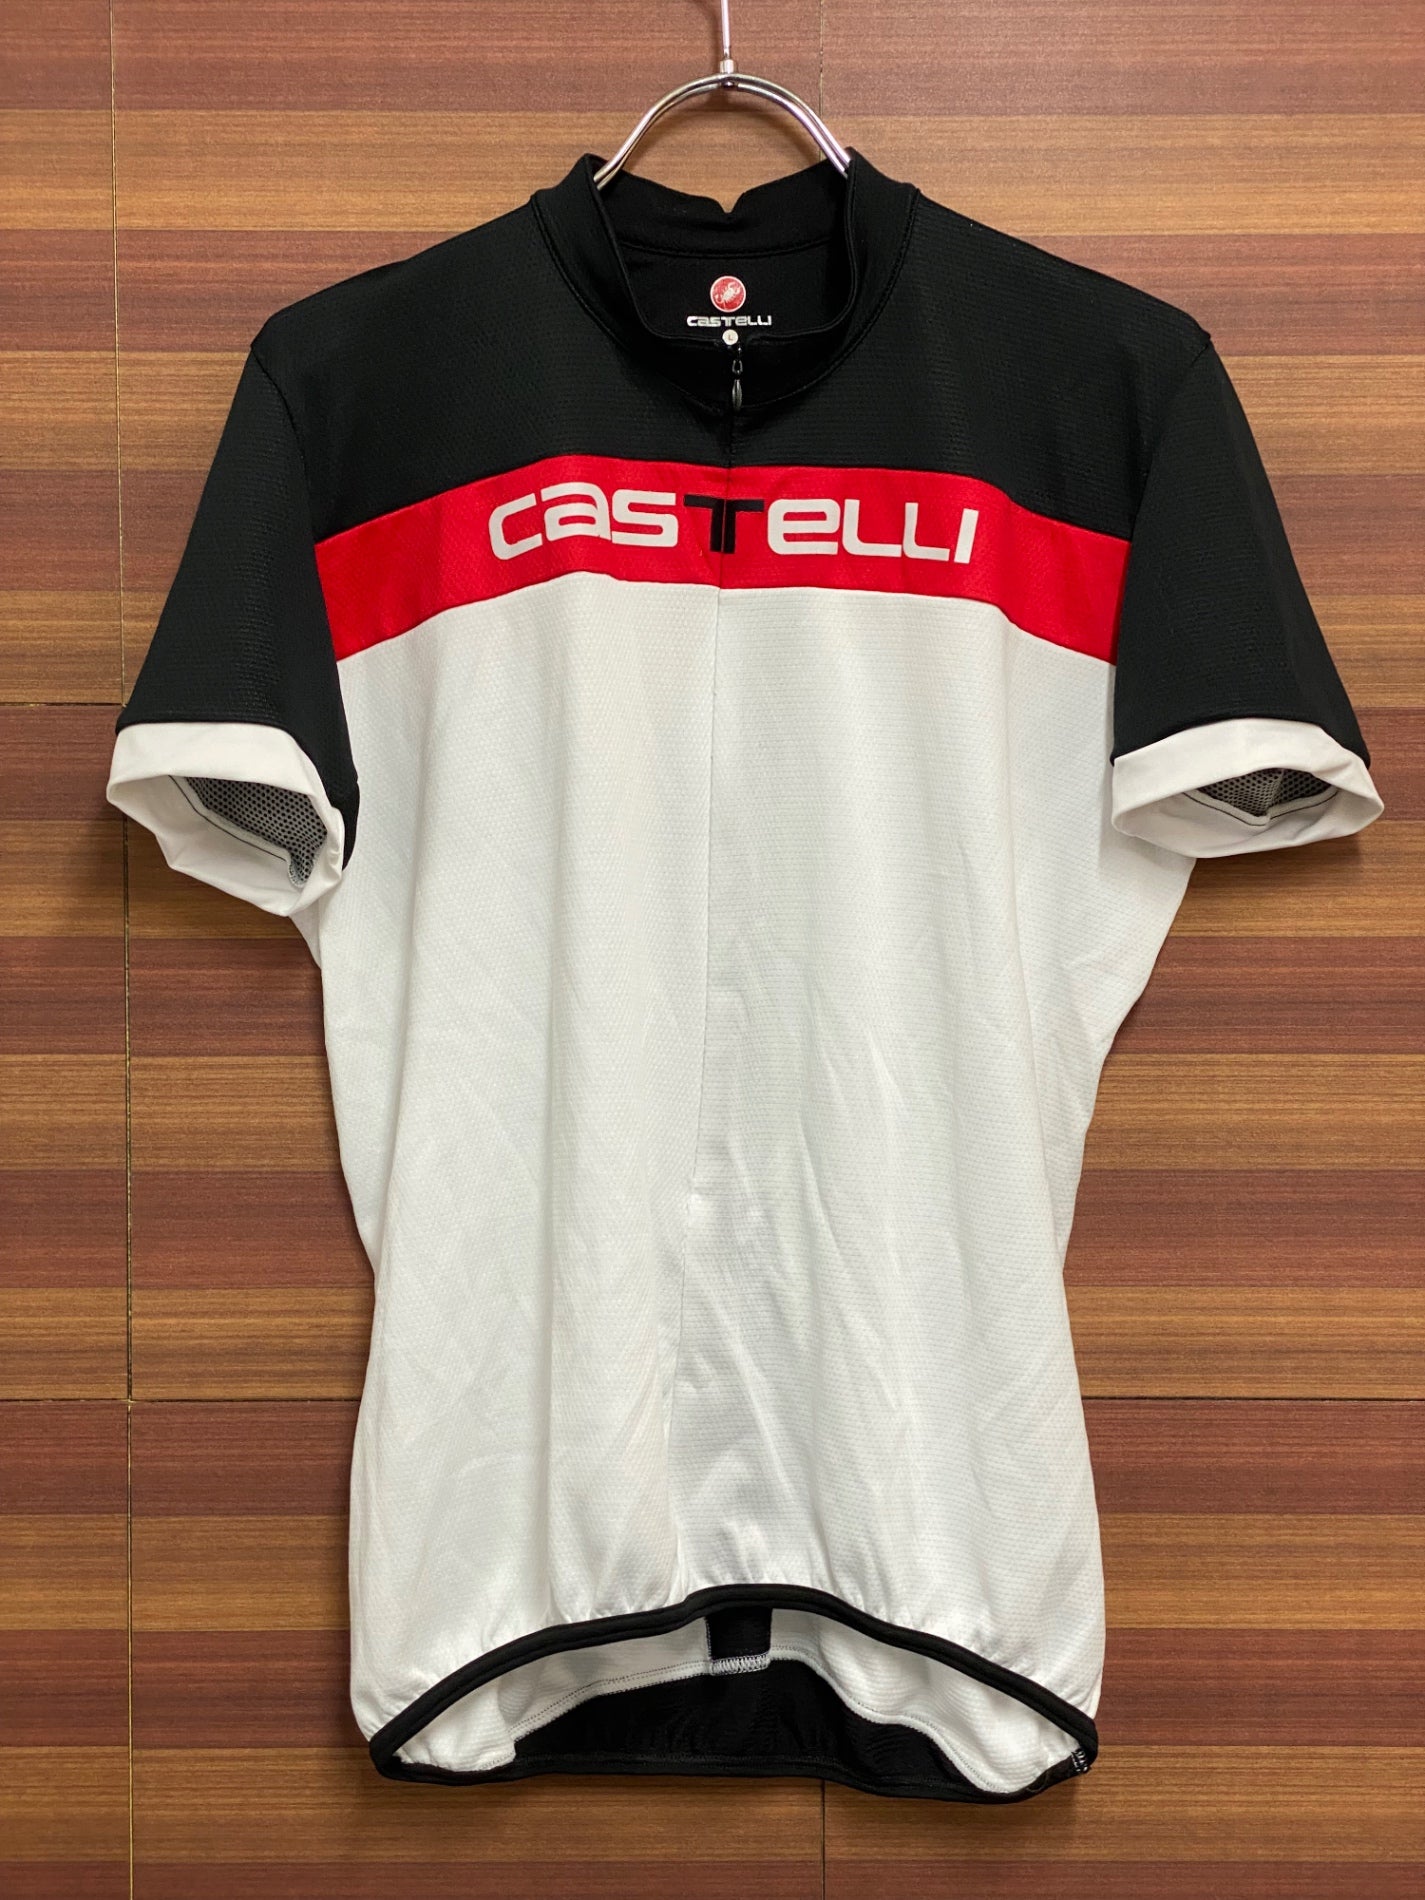 特典付きカステリ Castelli サイクリングジャージ 半袖 Foga サイズM 新品 赤 レッド Mサイズ